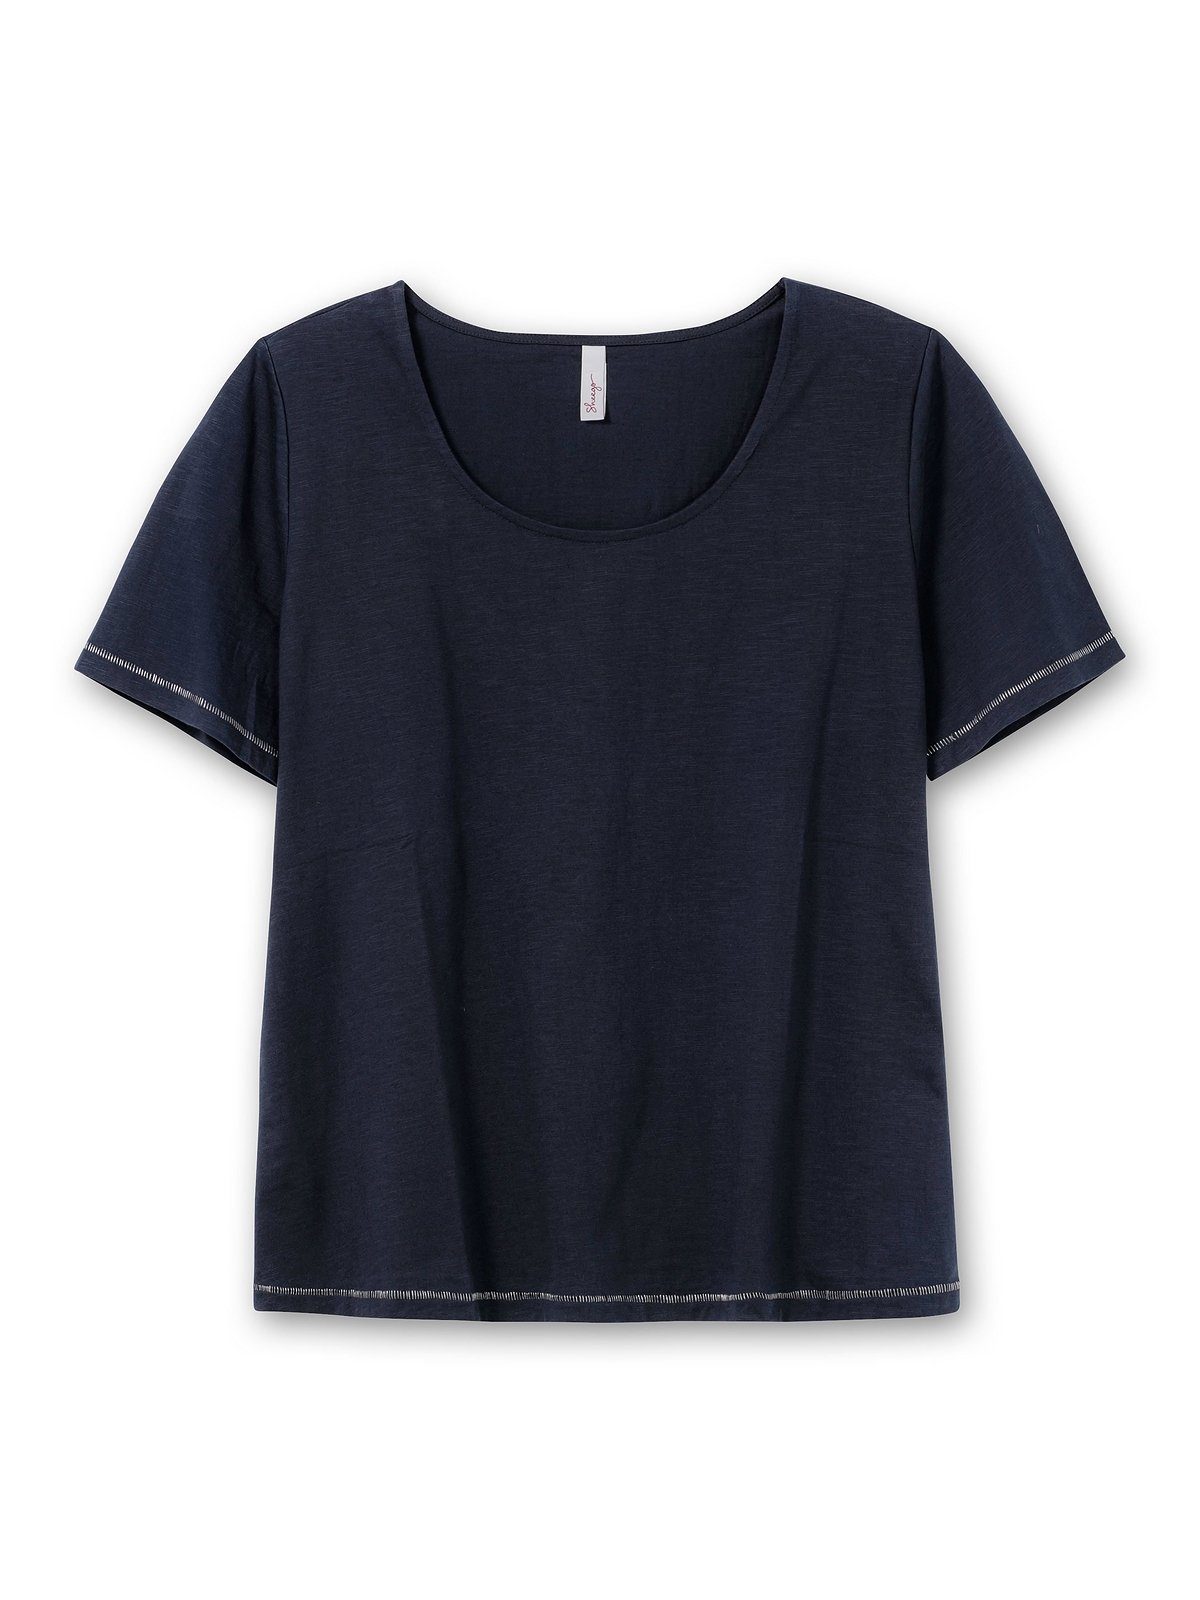 Sheego T-Shirt Große Größen der nachtblau hinten mit auf Print Schulter